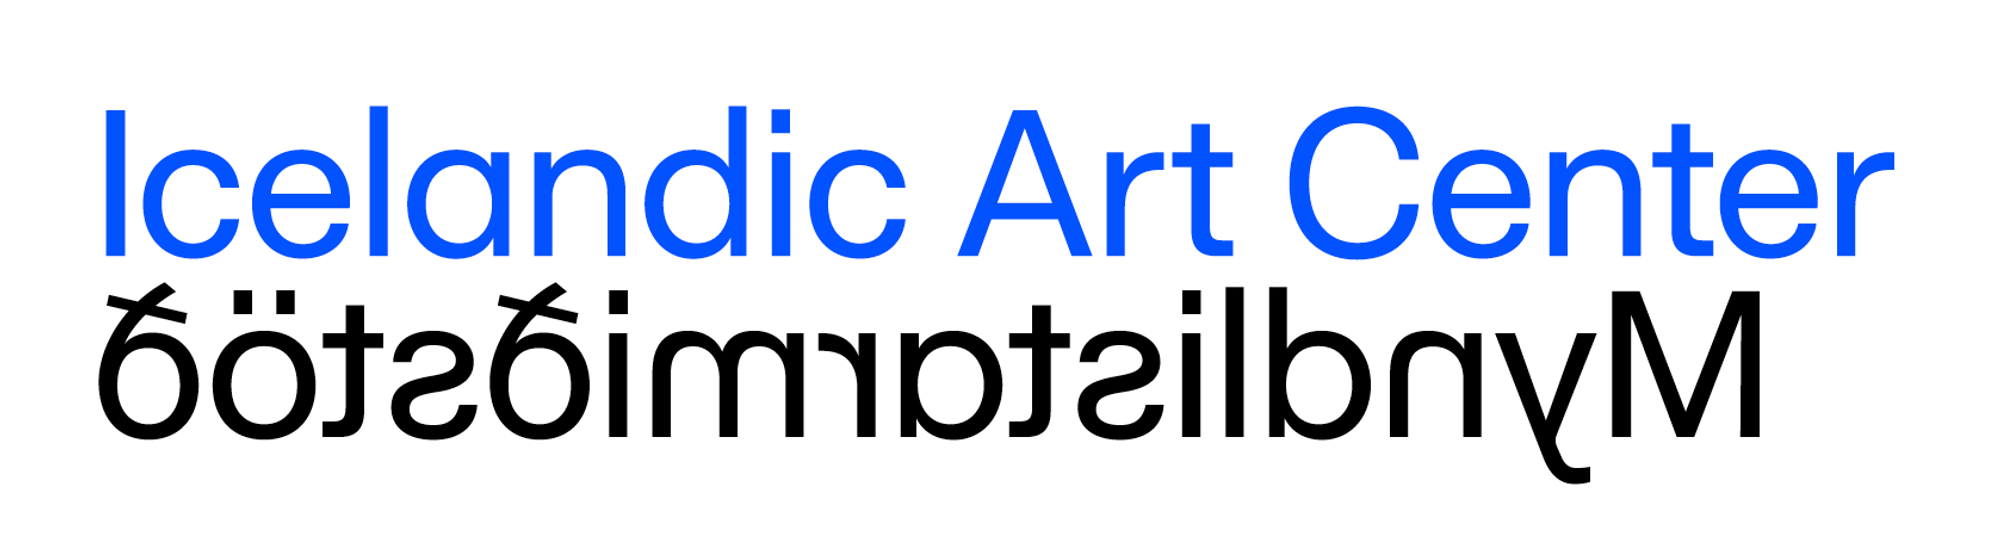 Icelandic Art Center logo